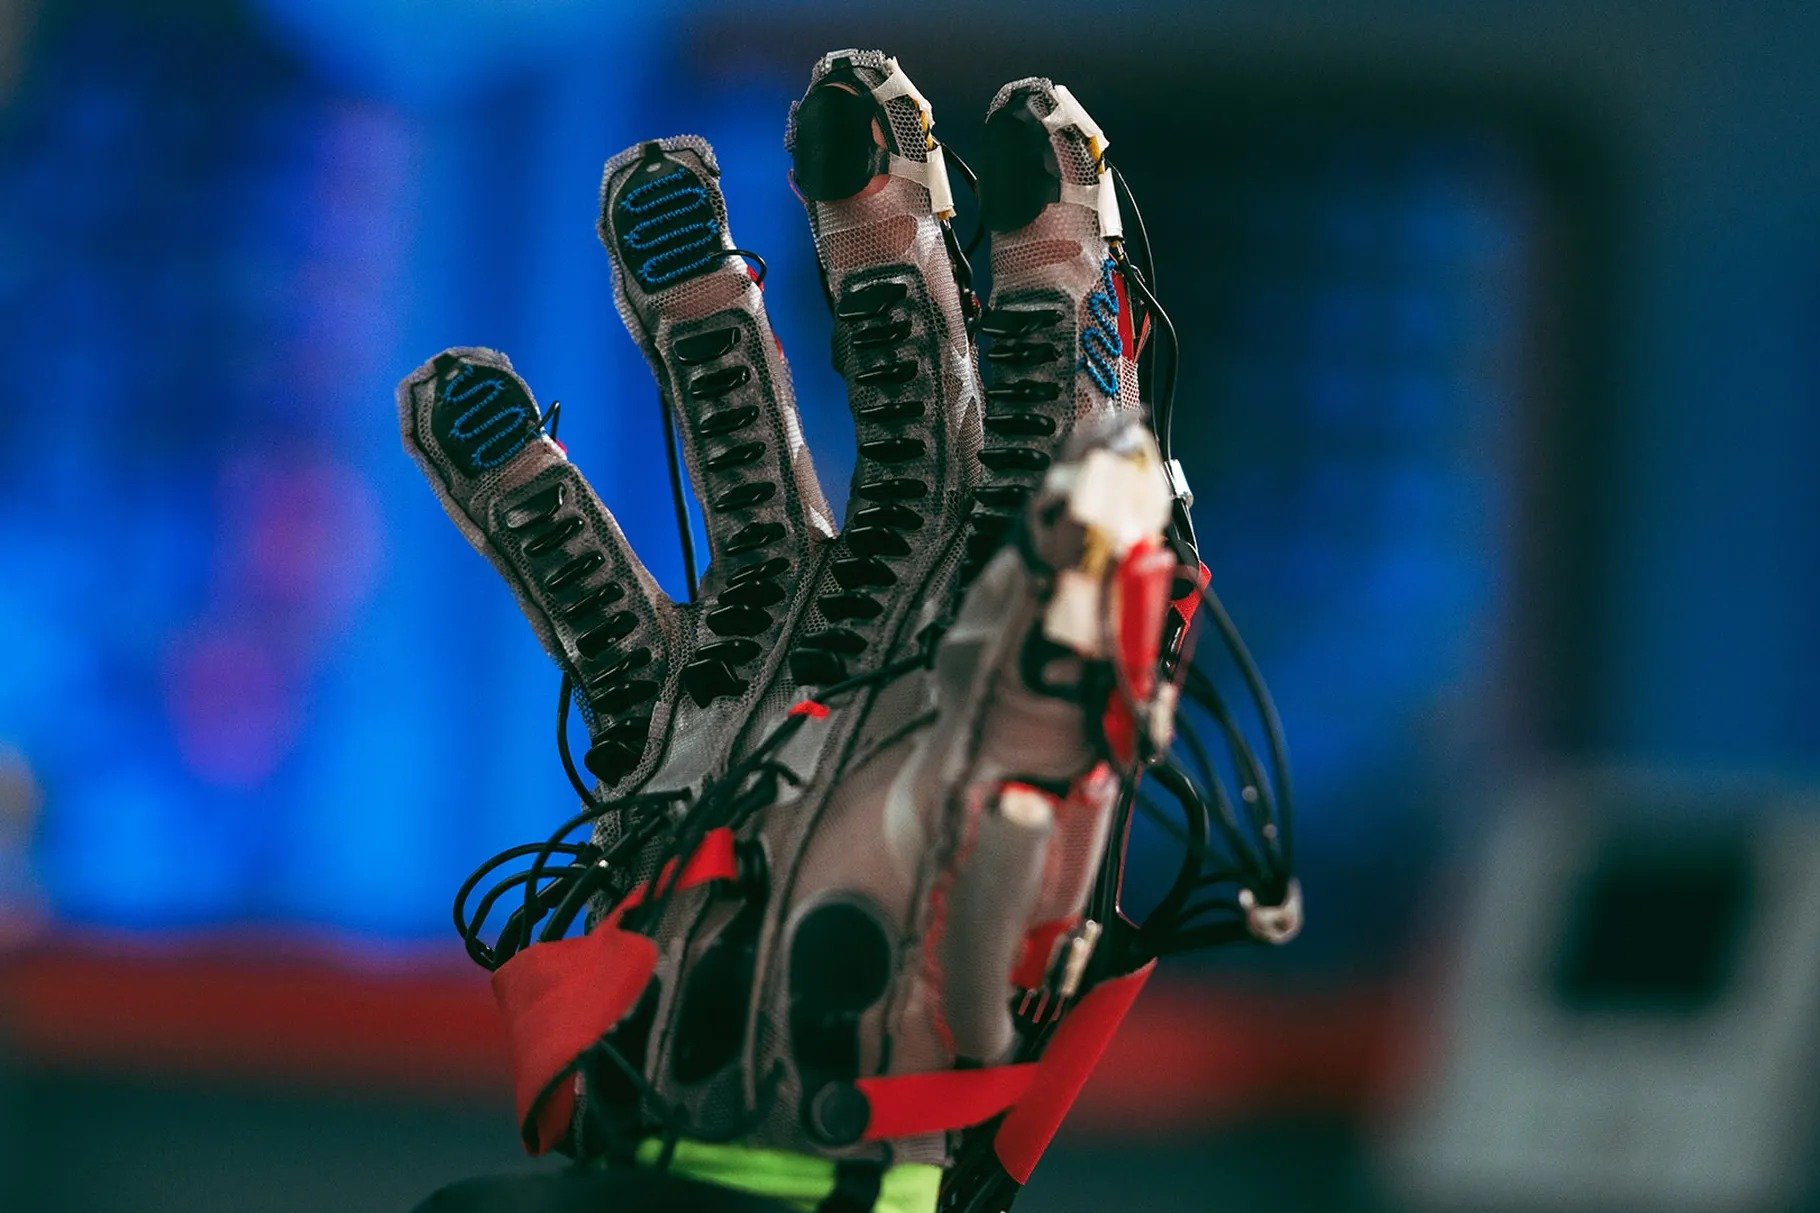 Metaverse : Des gants haptiques pour toucher les objets en VR